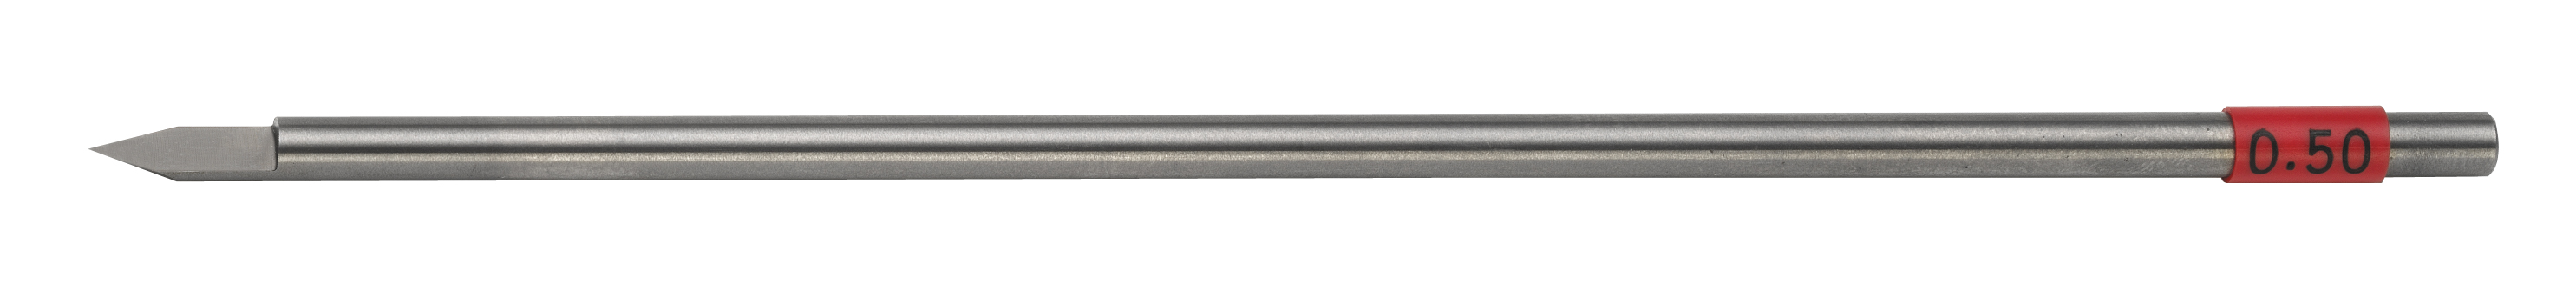 TS cutter, shaft dia. 4.36 mm, width 0.50 mm Gravograph